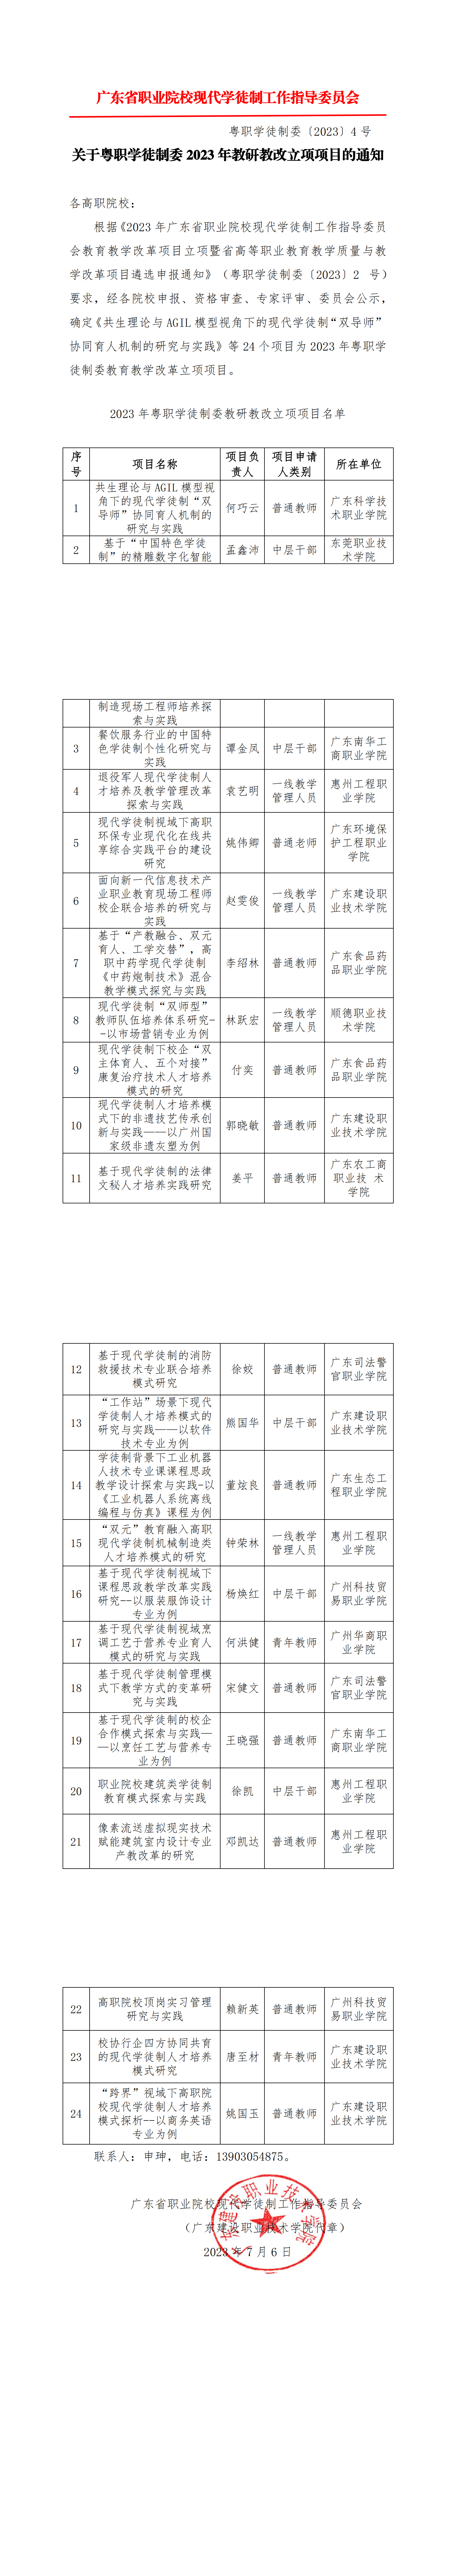 2023年广东省高职教育现代学徒制工作指导委员会教改项目立项通知_00.png